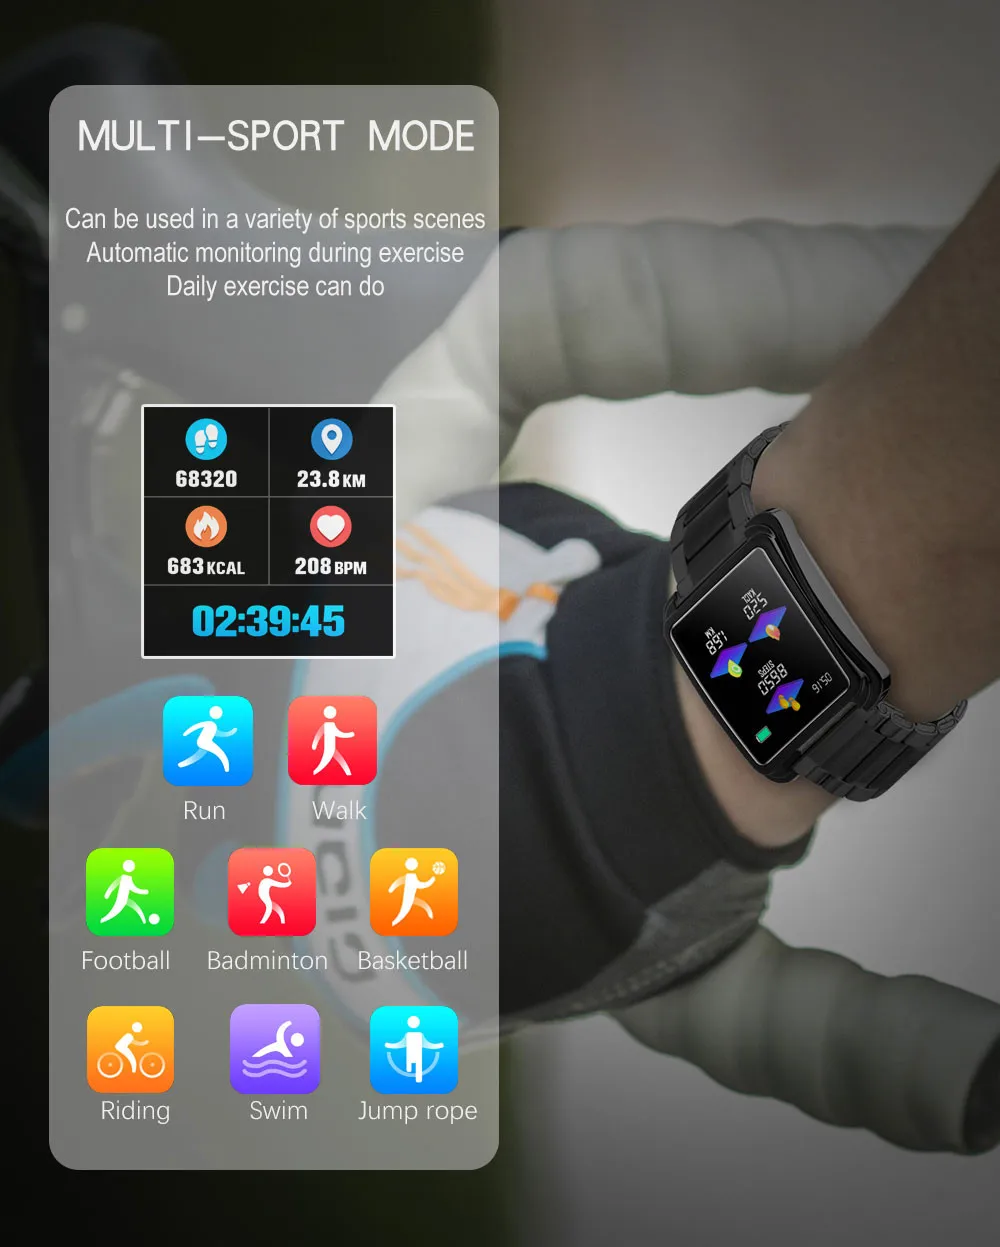 Бизнес Мужские Смарт-часы V60 пульсометр кровяное давление фитнес-трекер Смарт-часы спортивные смарт-будильник для IOS Android